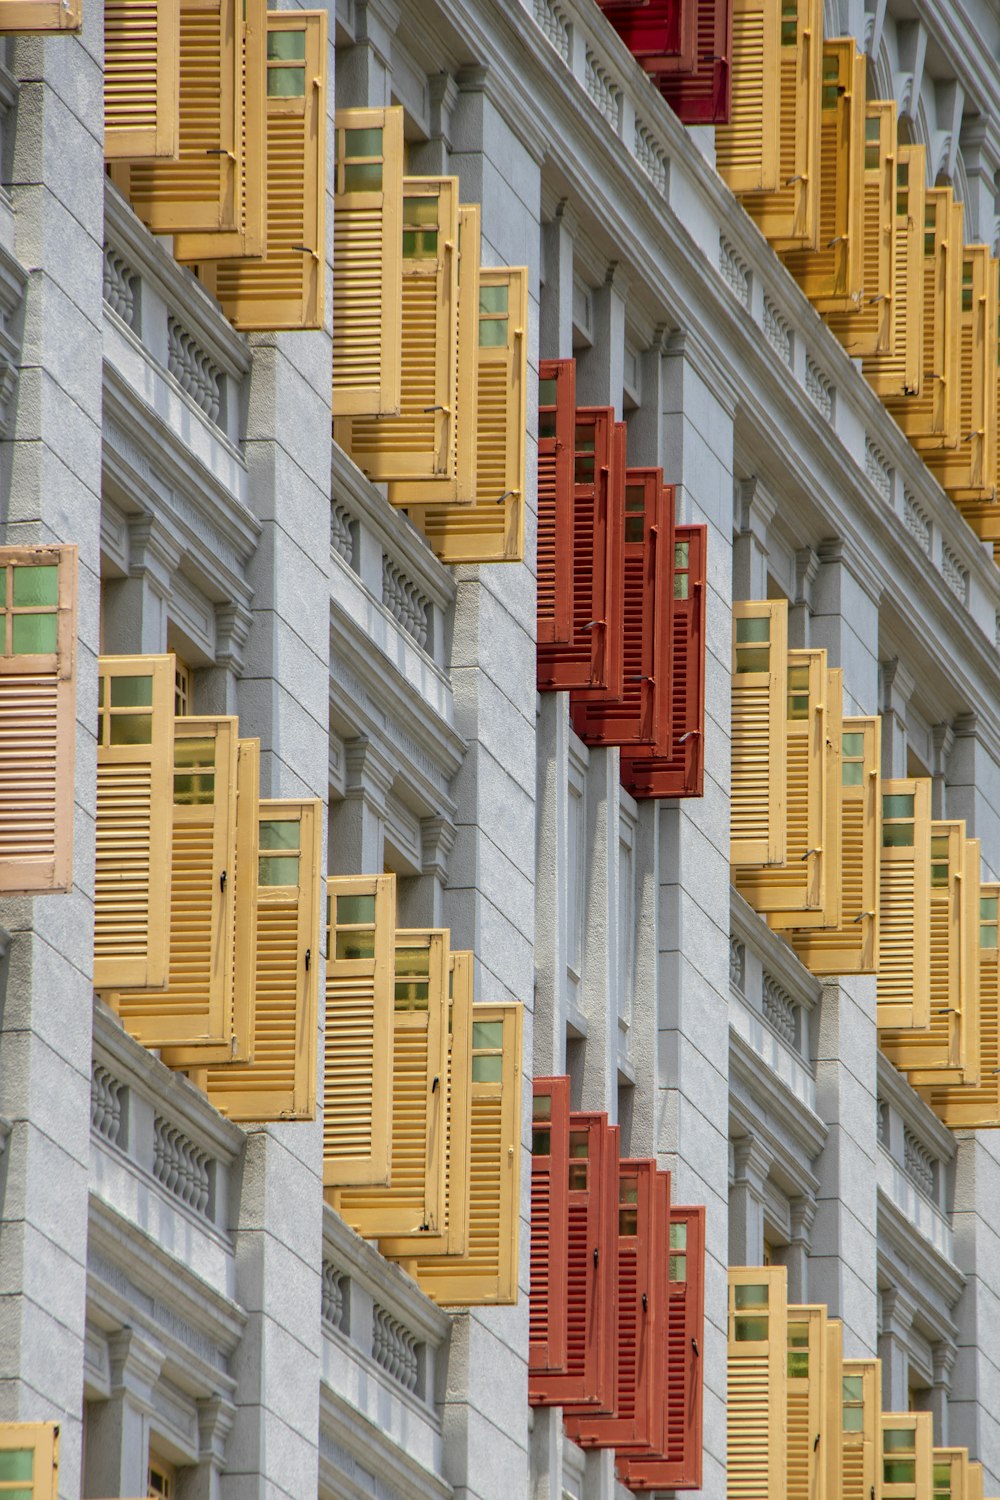 창문이 많고 노란색과 빨간색 셔터가 있는 건물